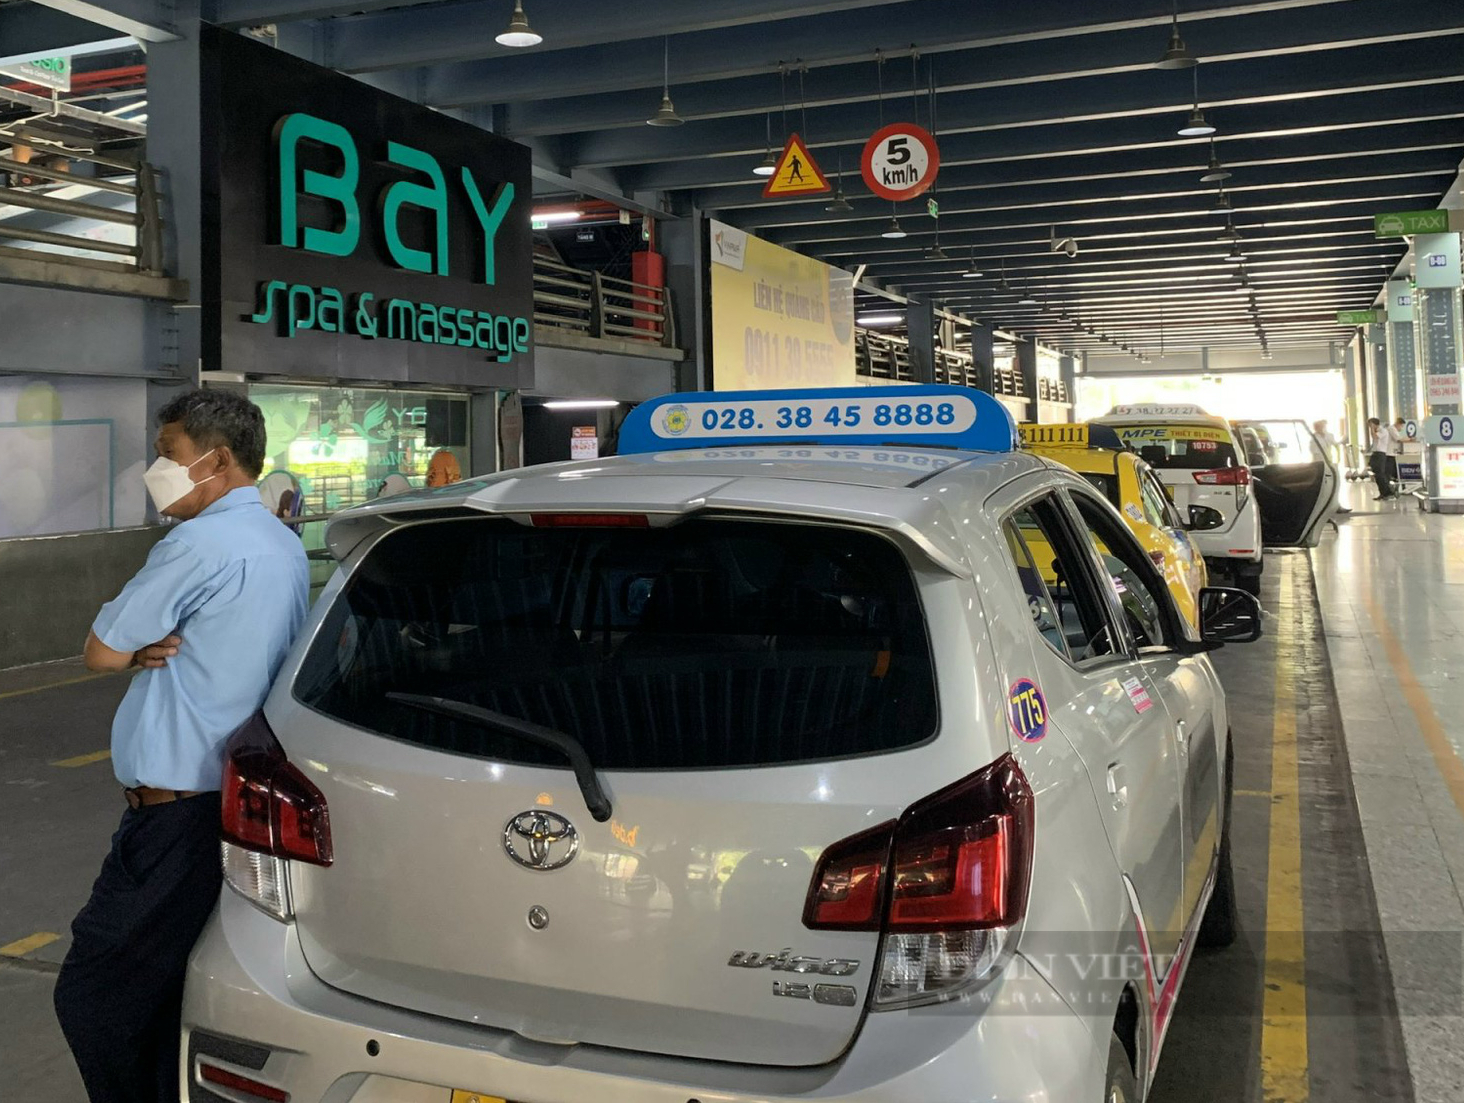 Cao điểm 30/4, Tân Sơn Nhất lo thiếu taxi phục vụ hành khách - Ảnh 1.